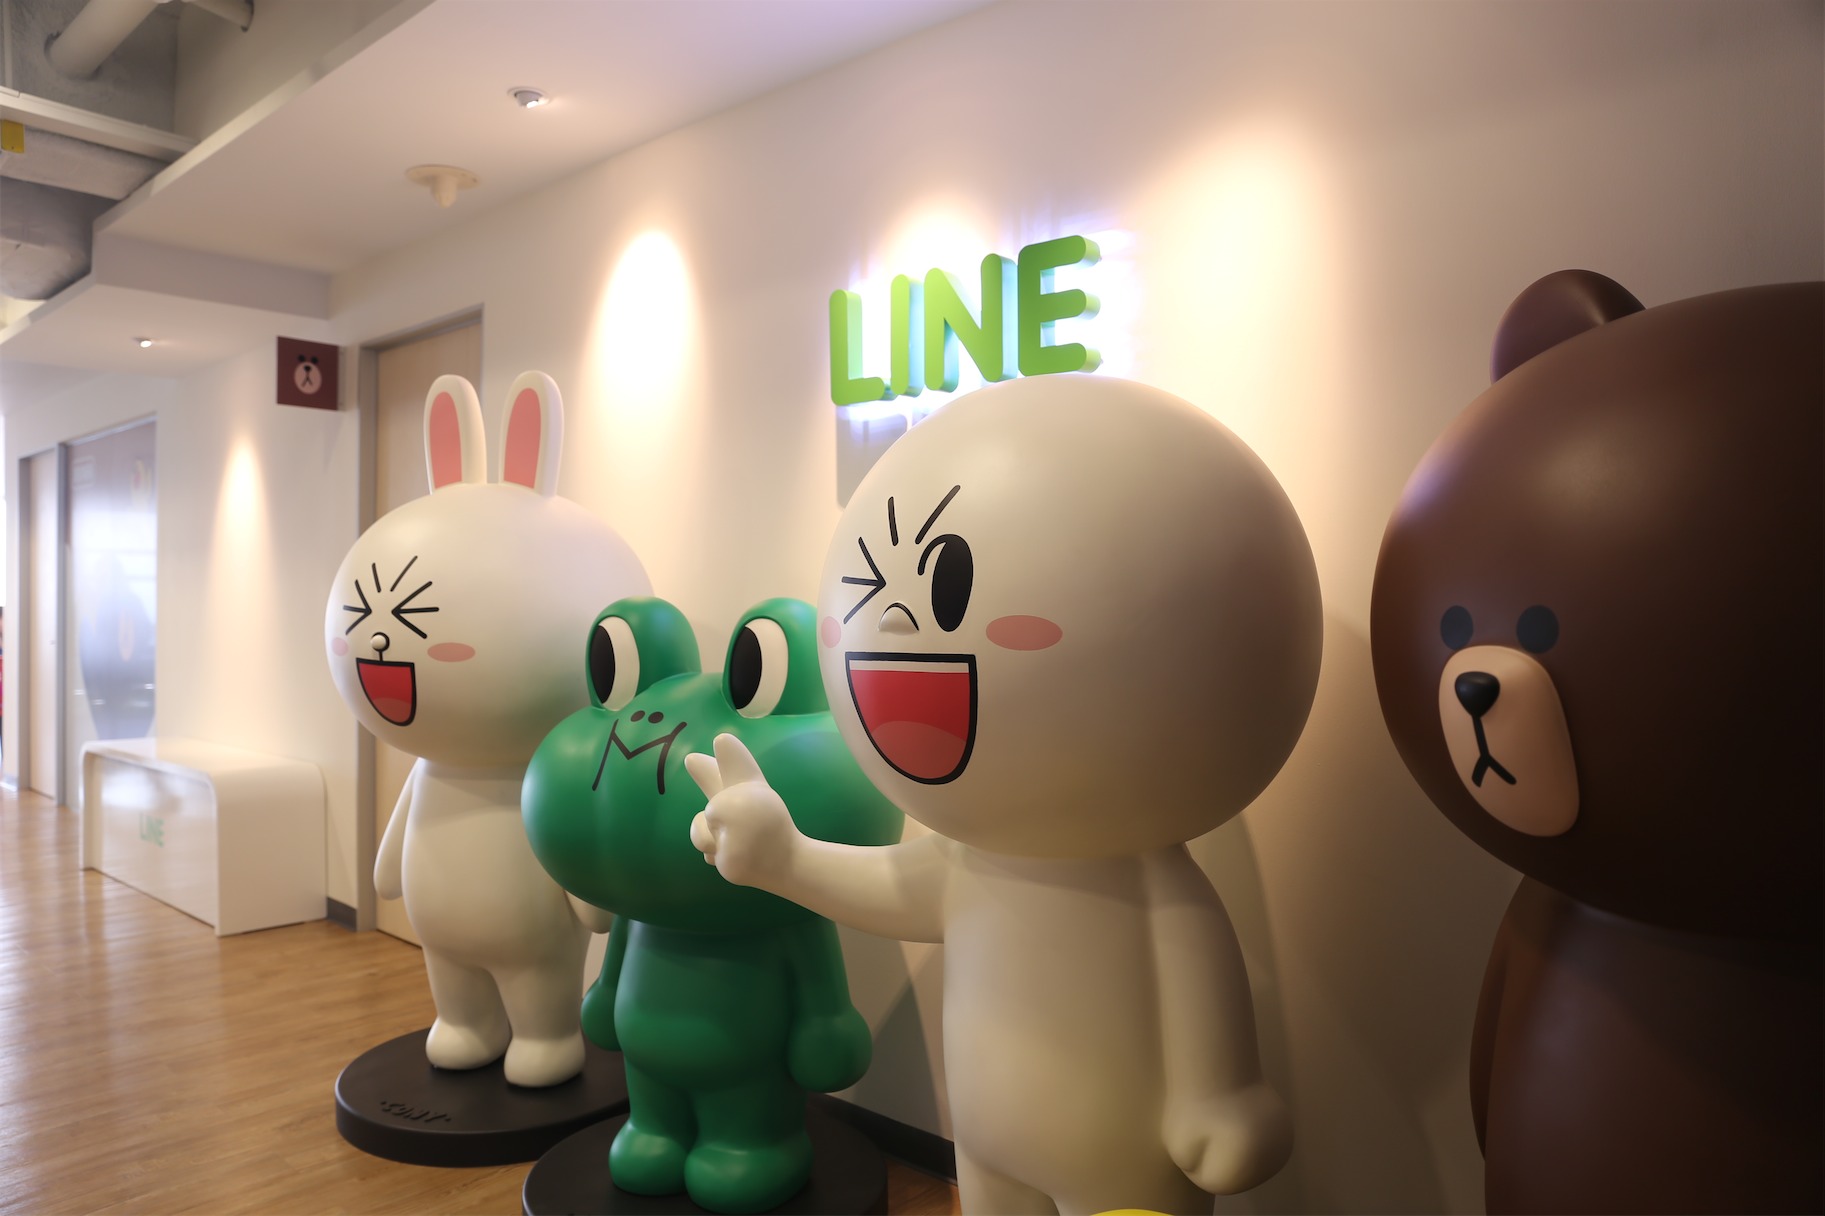 สัมภาษณ์พิเศษ : เปิดบ้านคุยกับ LINE ประเทศไทย ฉลอง LINE Cookie Run ดาวน์โหลดทะลุ 10 ล้าน